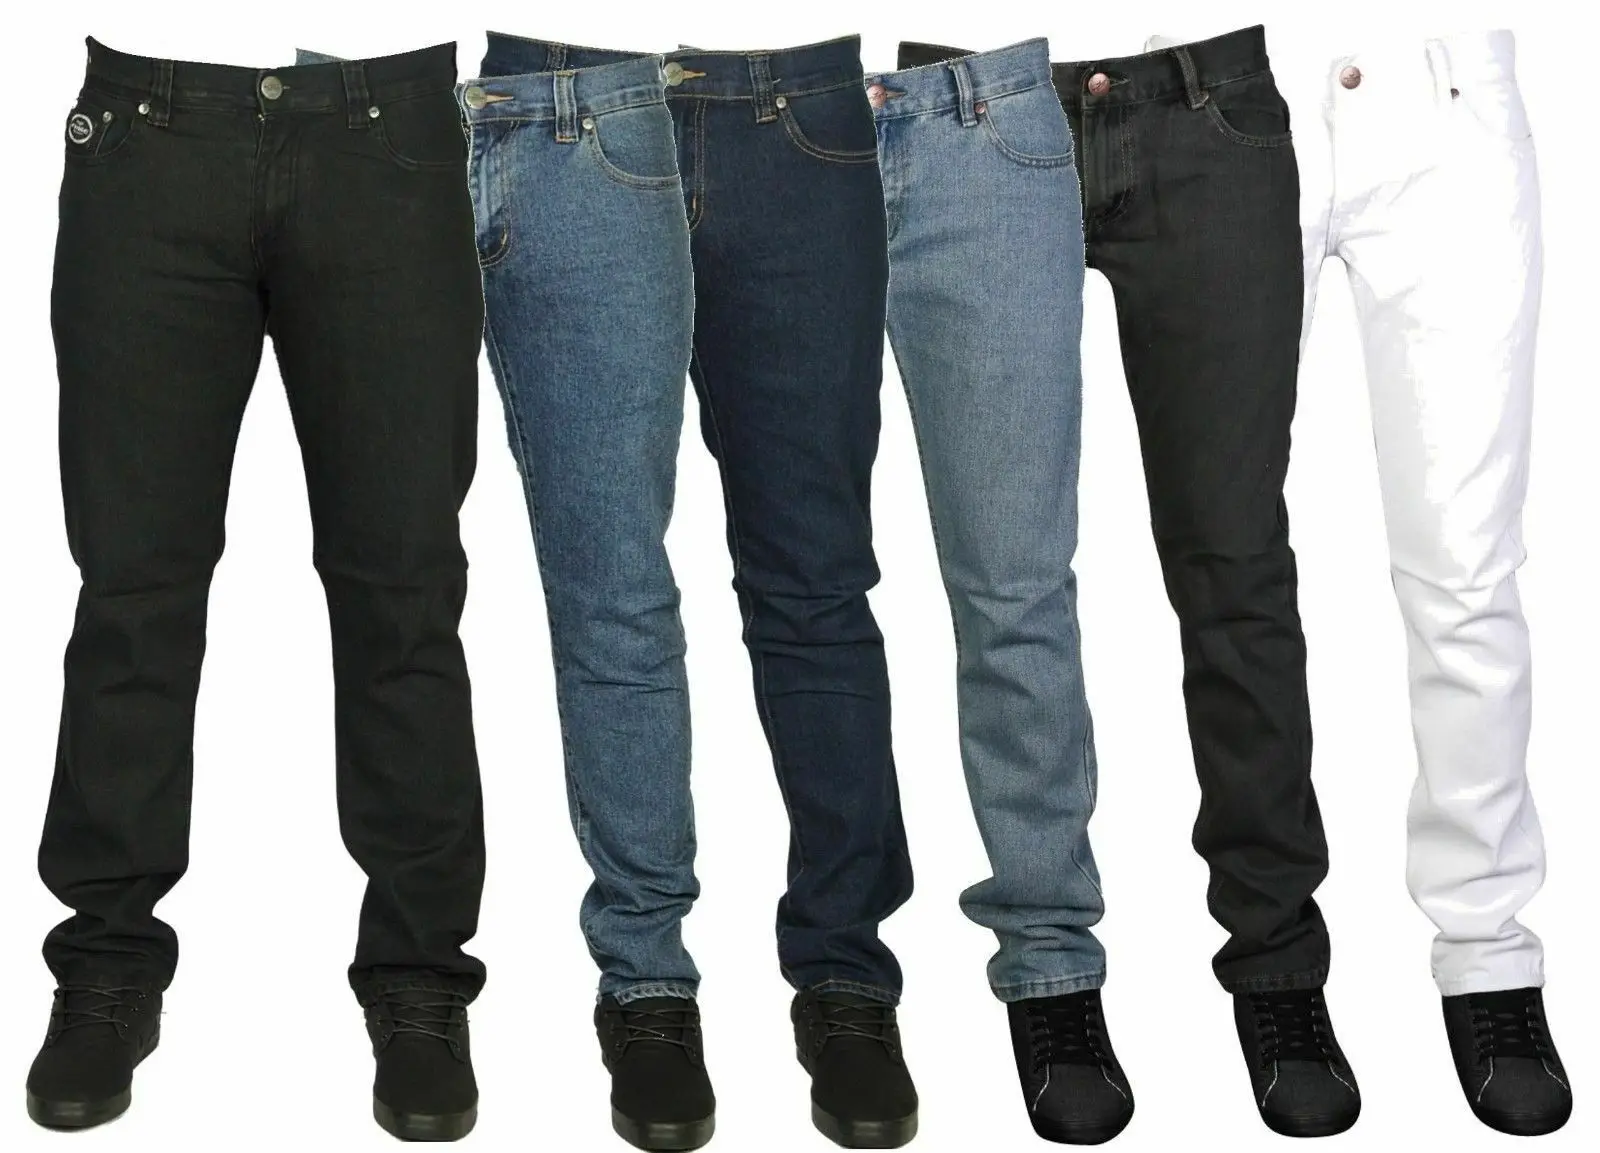 

Мужские фирменные облегающие джинсовые брюки, синие, черные, белые джинсы, размер 28-40, только фунтов 6,99